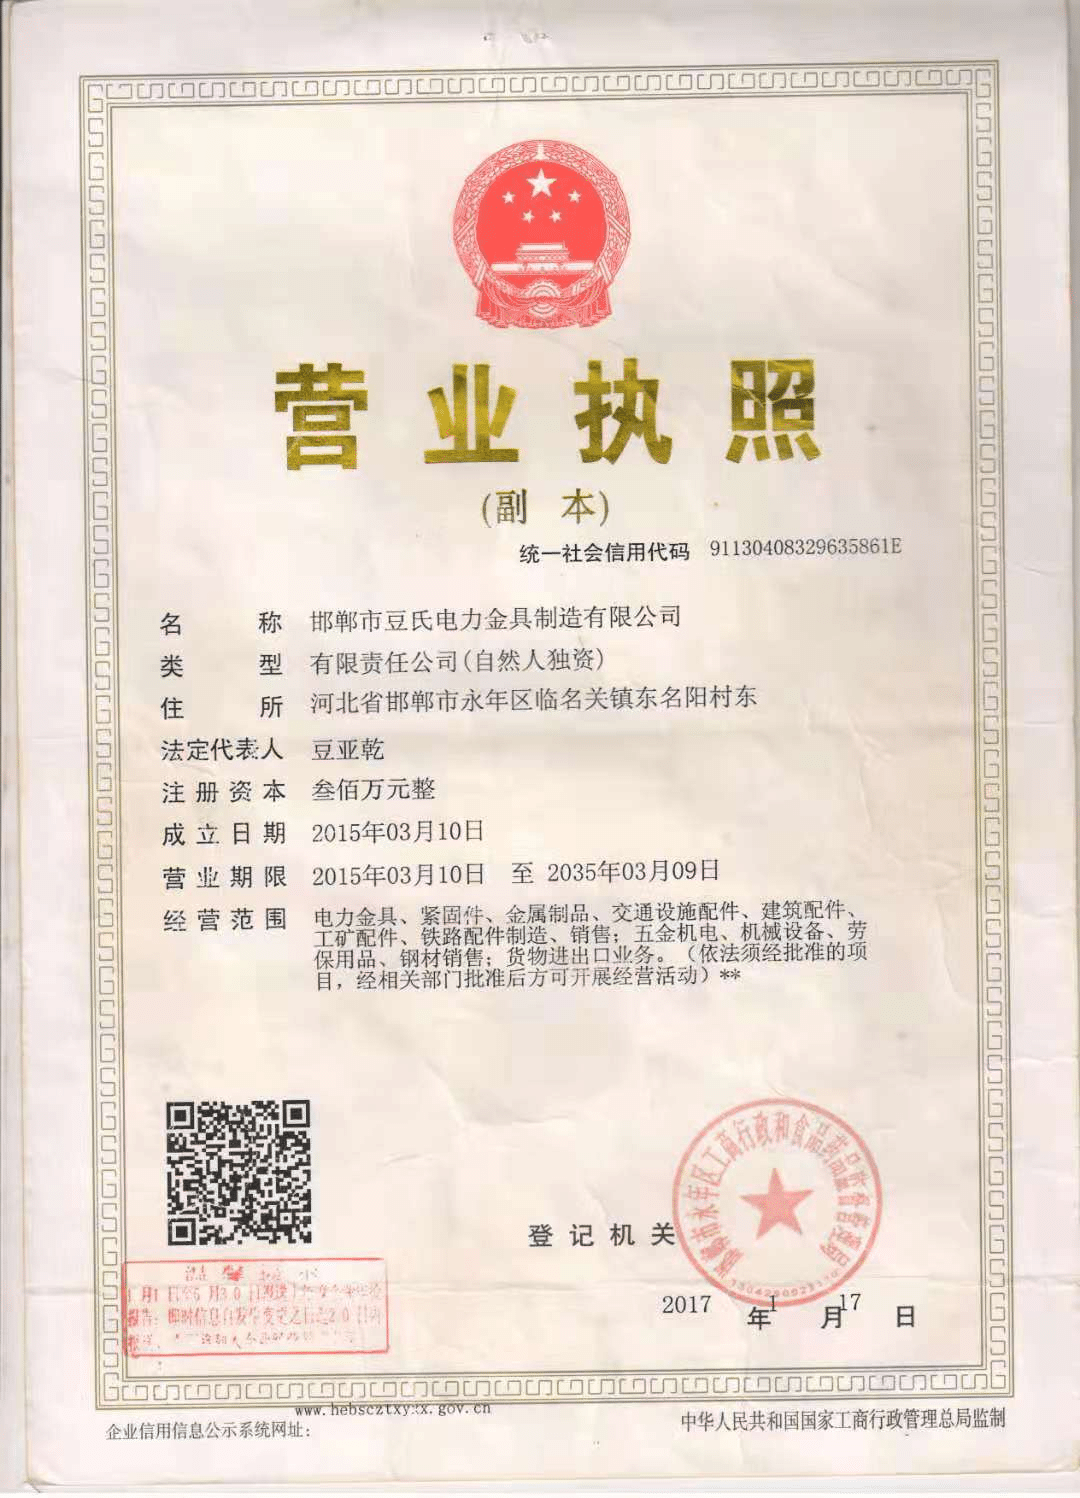 Dyplom honorowy (1)